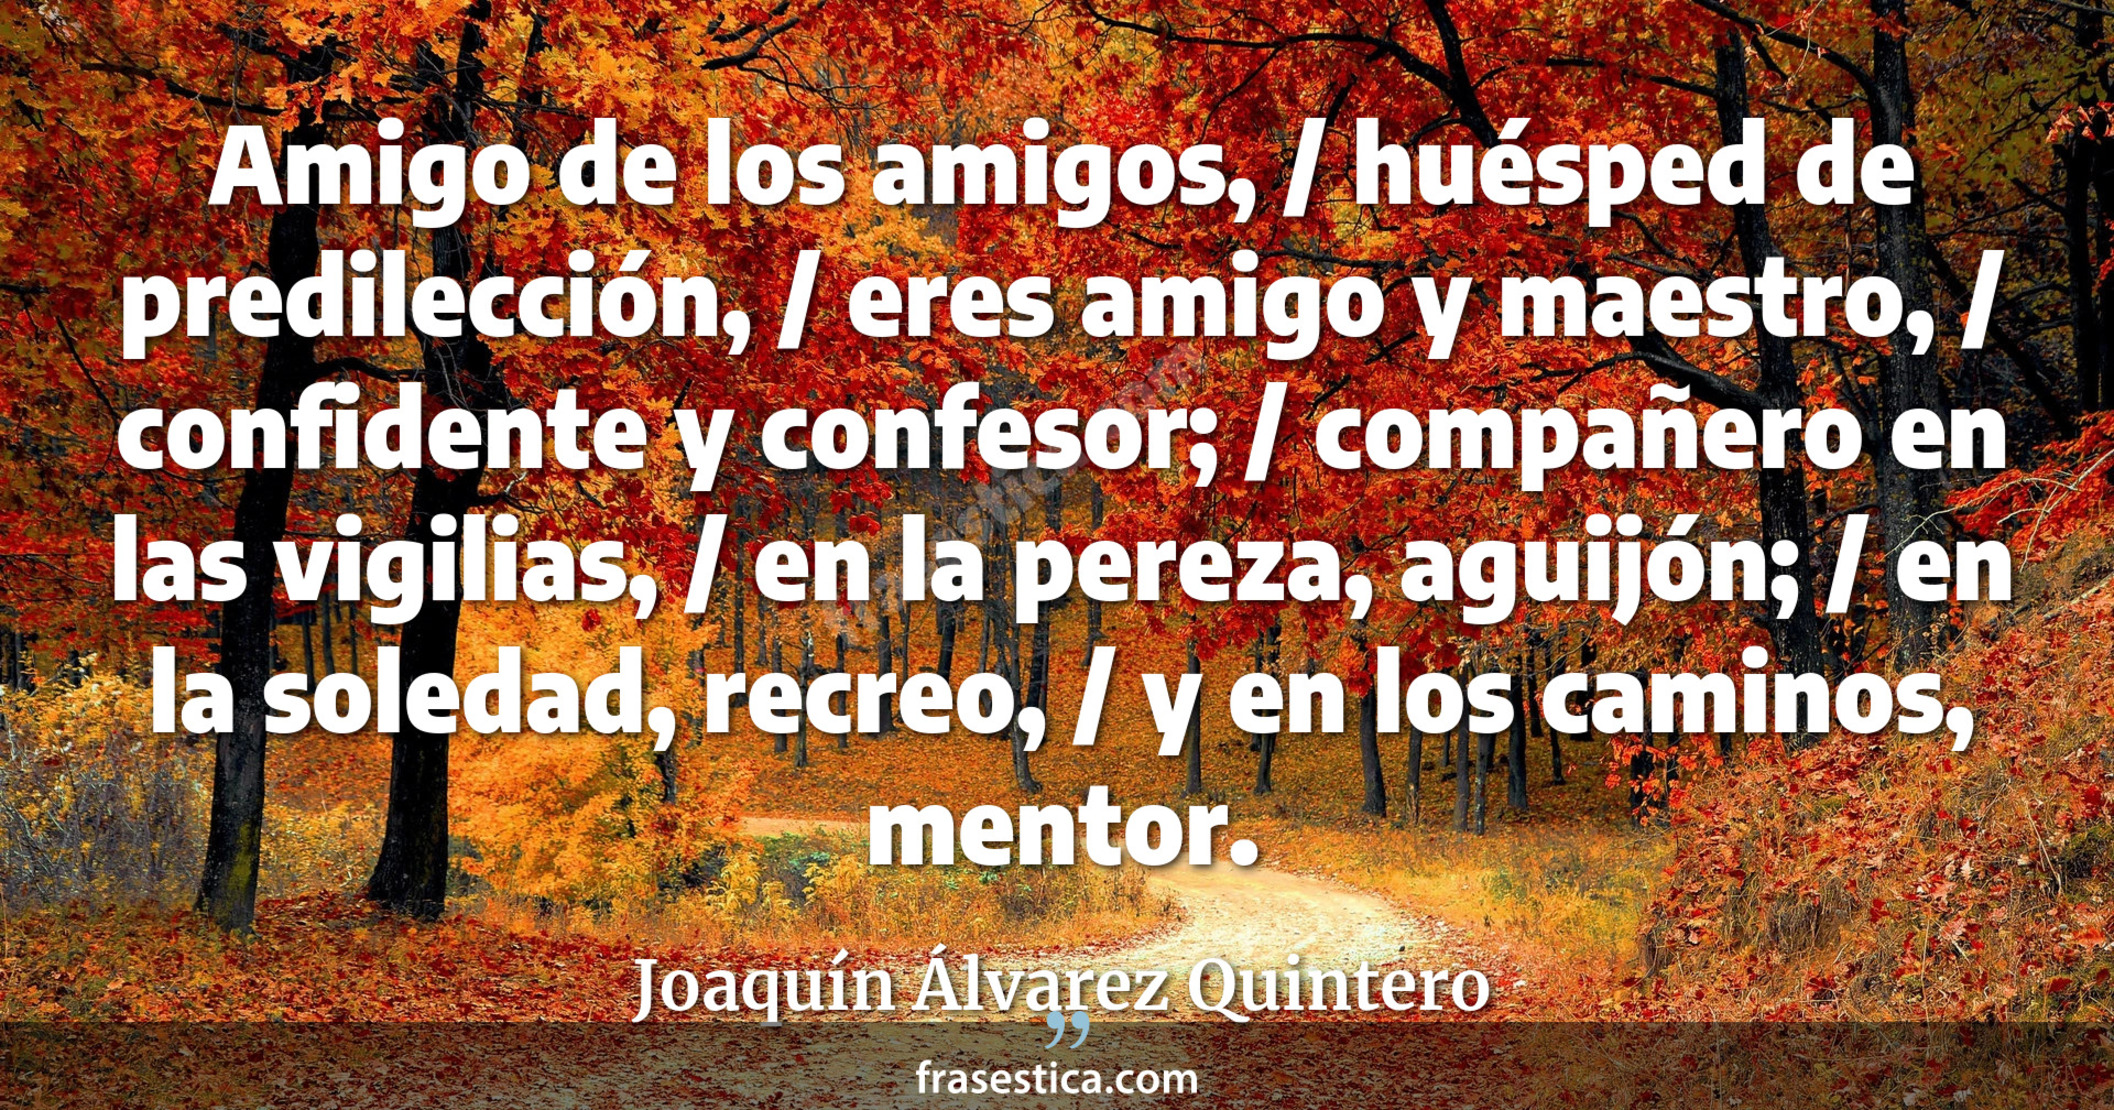 Amigo de los amigos, / huésped de predilección, / eres amigo y maestro, / confidente y confesor; / compañero en las vigilias, / en la pereza, aguijón; / en la soledad, recreo, / y en los caminos, mentor. - Joaquín Álvarez Quintero